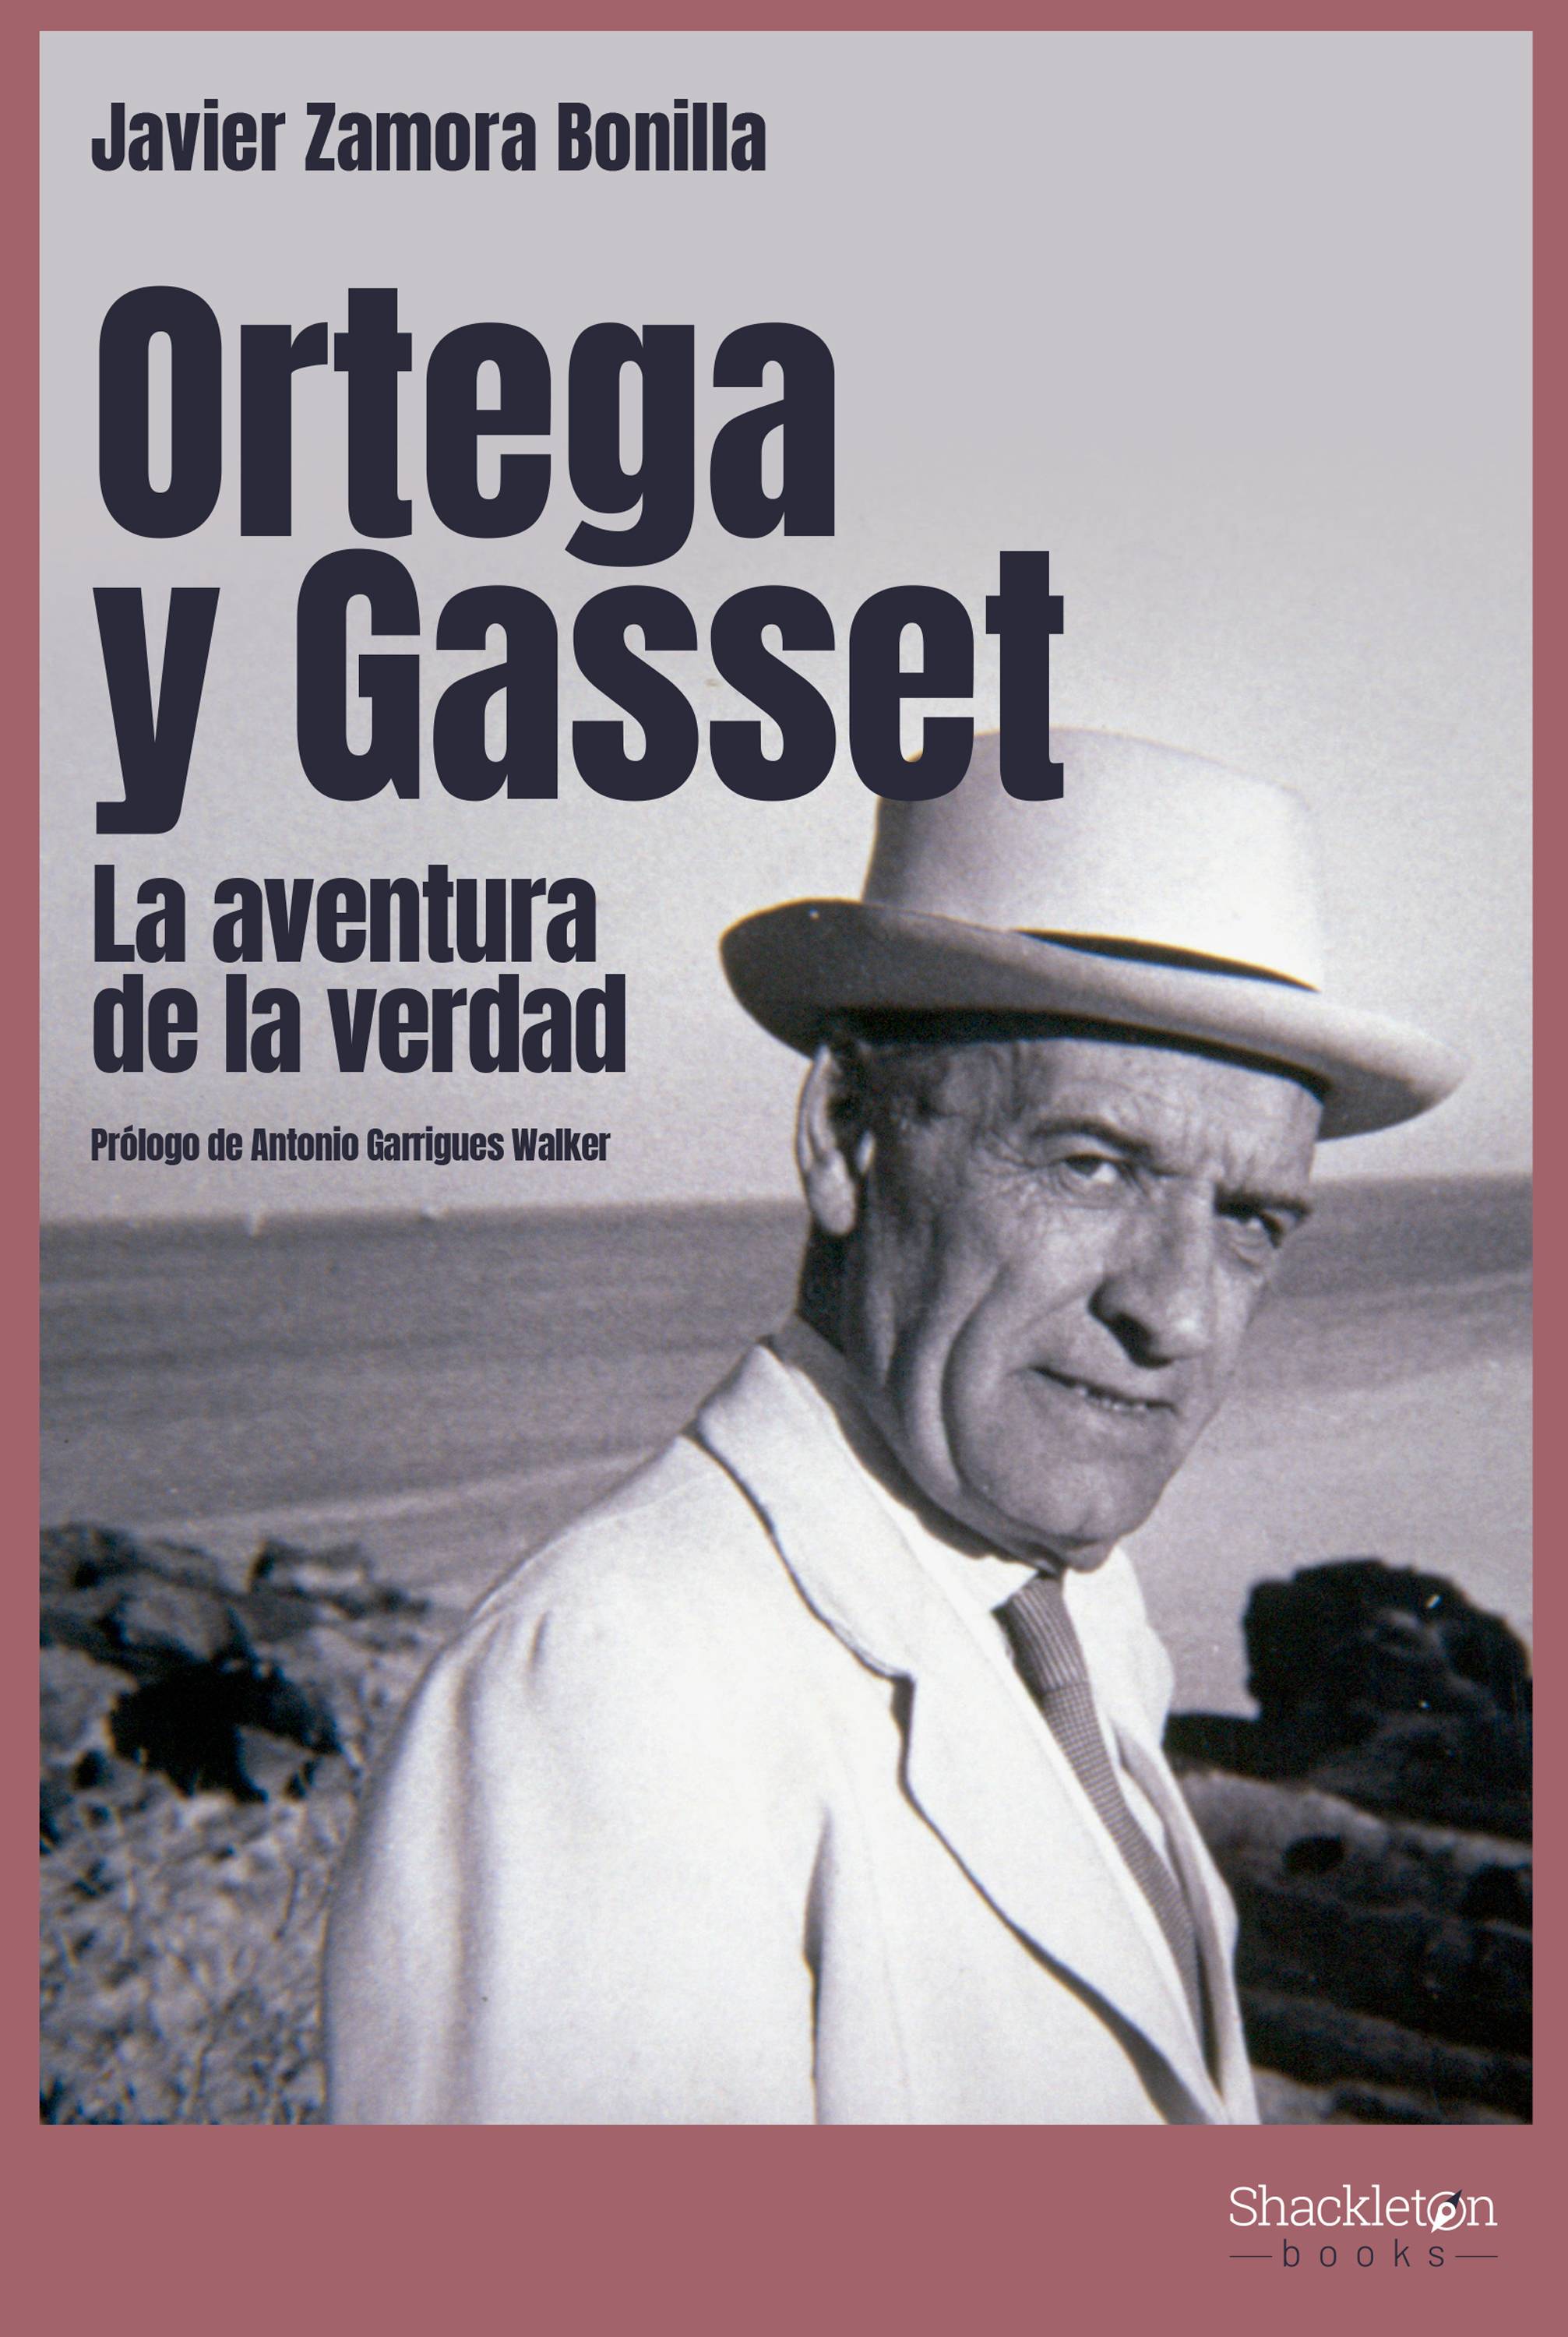 Imagen de portada del libro Ortega y Gasset